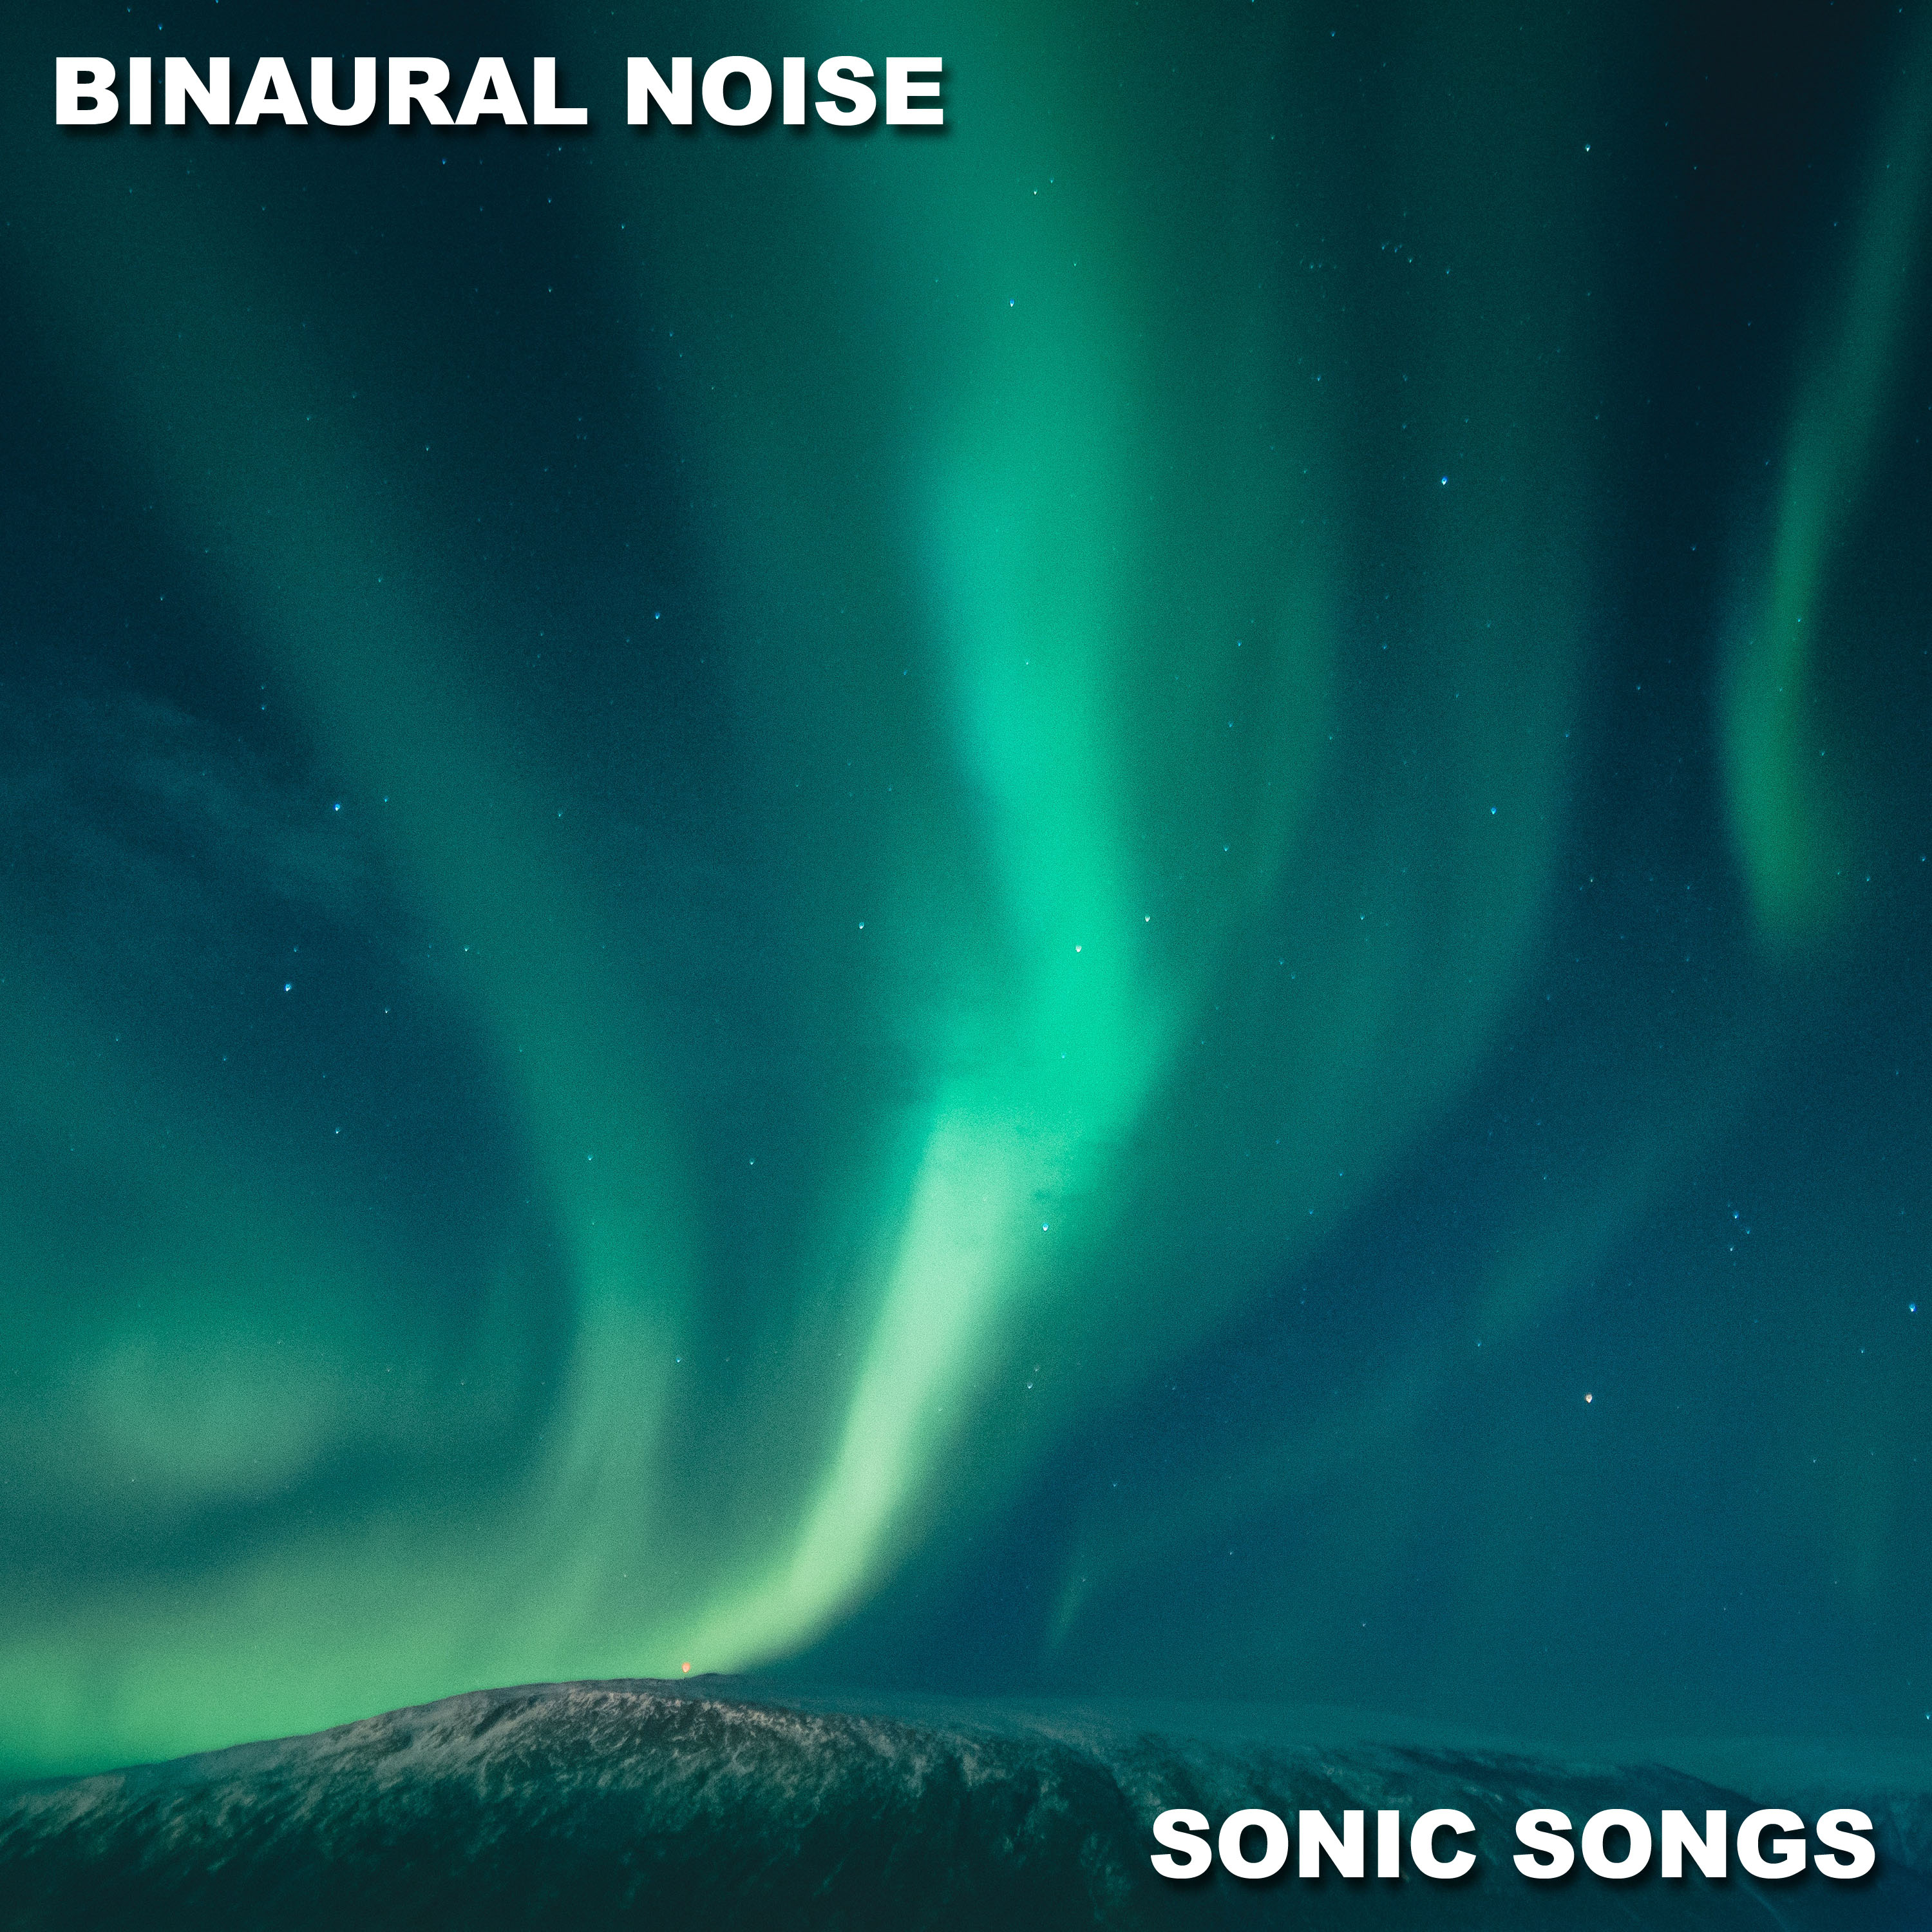 12 Binaural Noise Sonic Songs